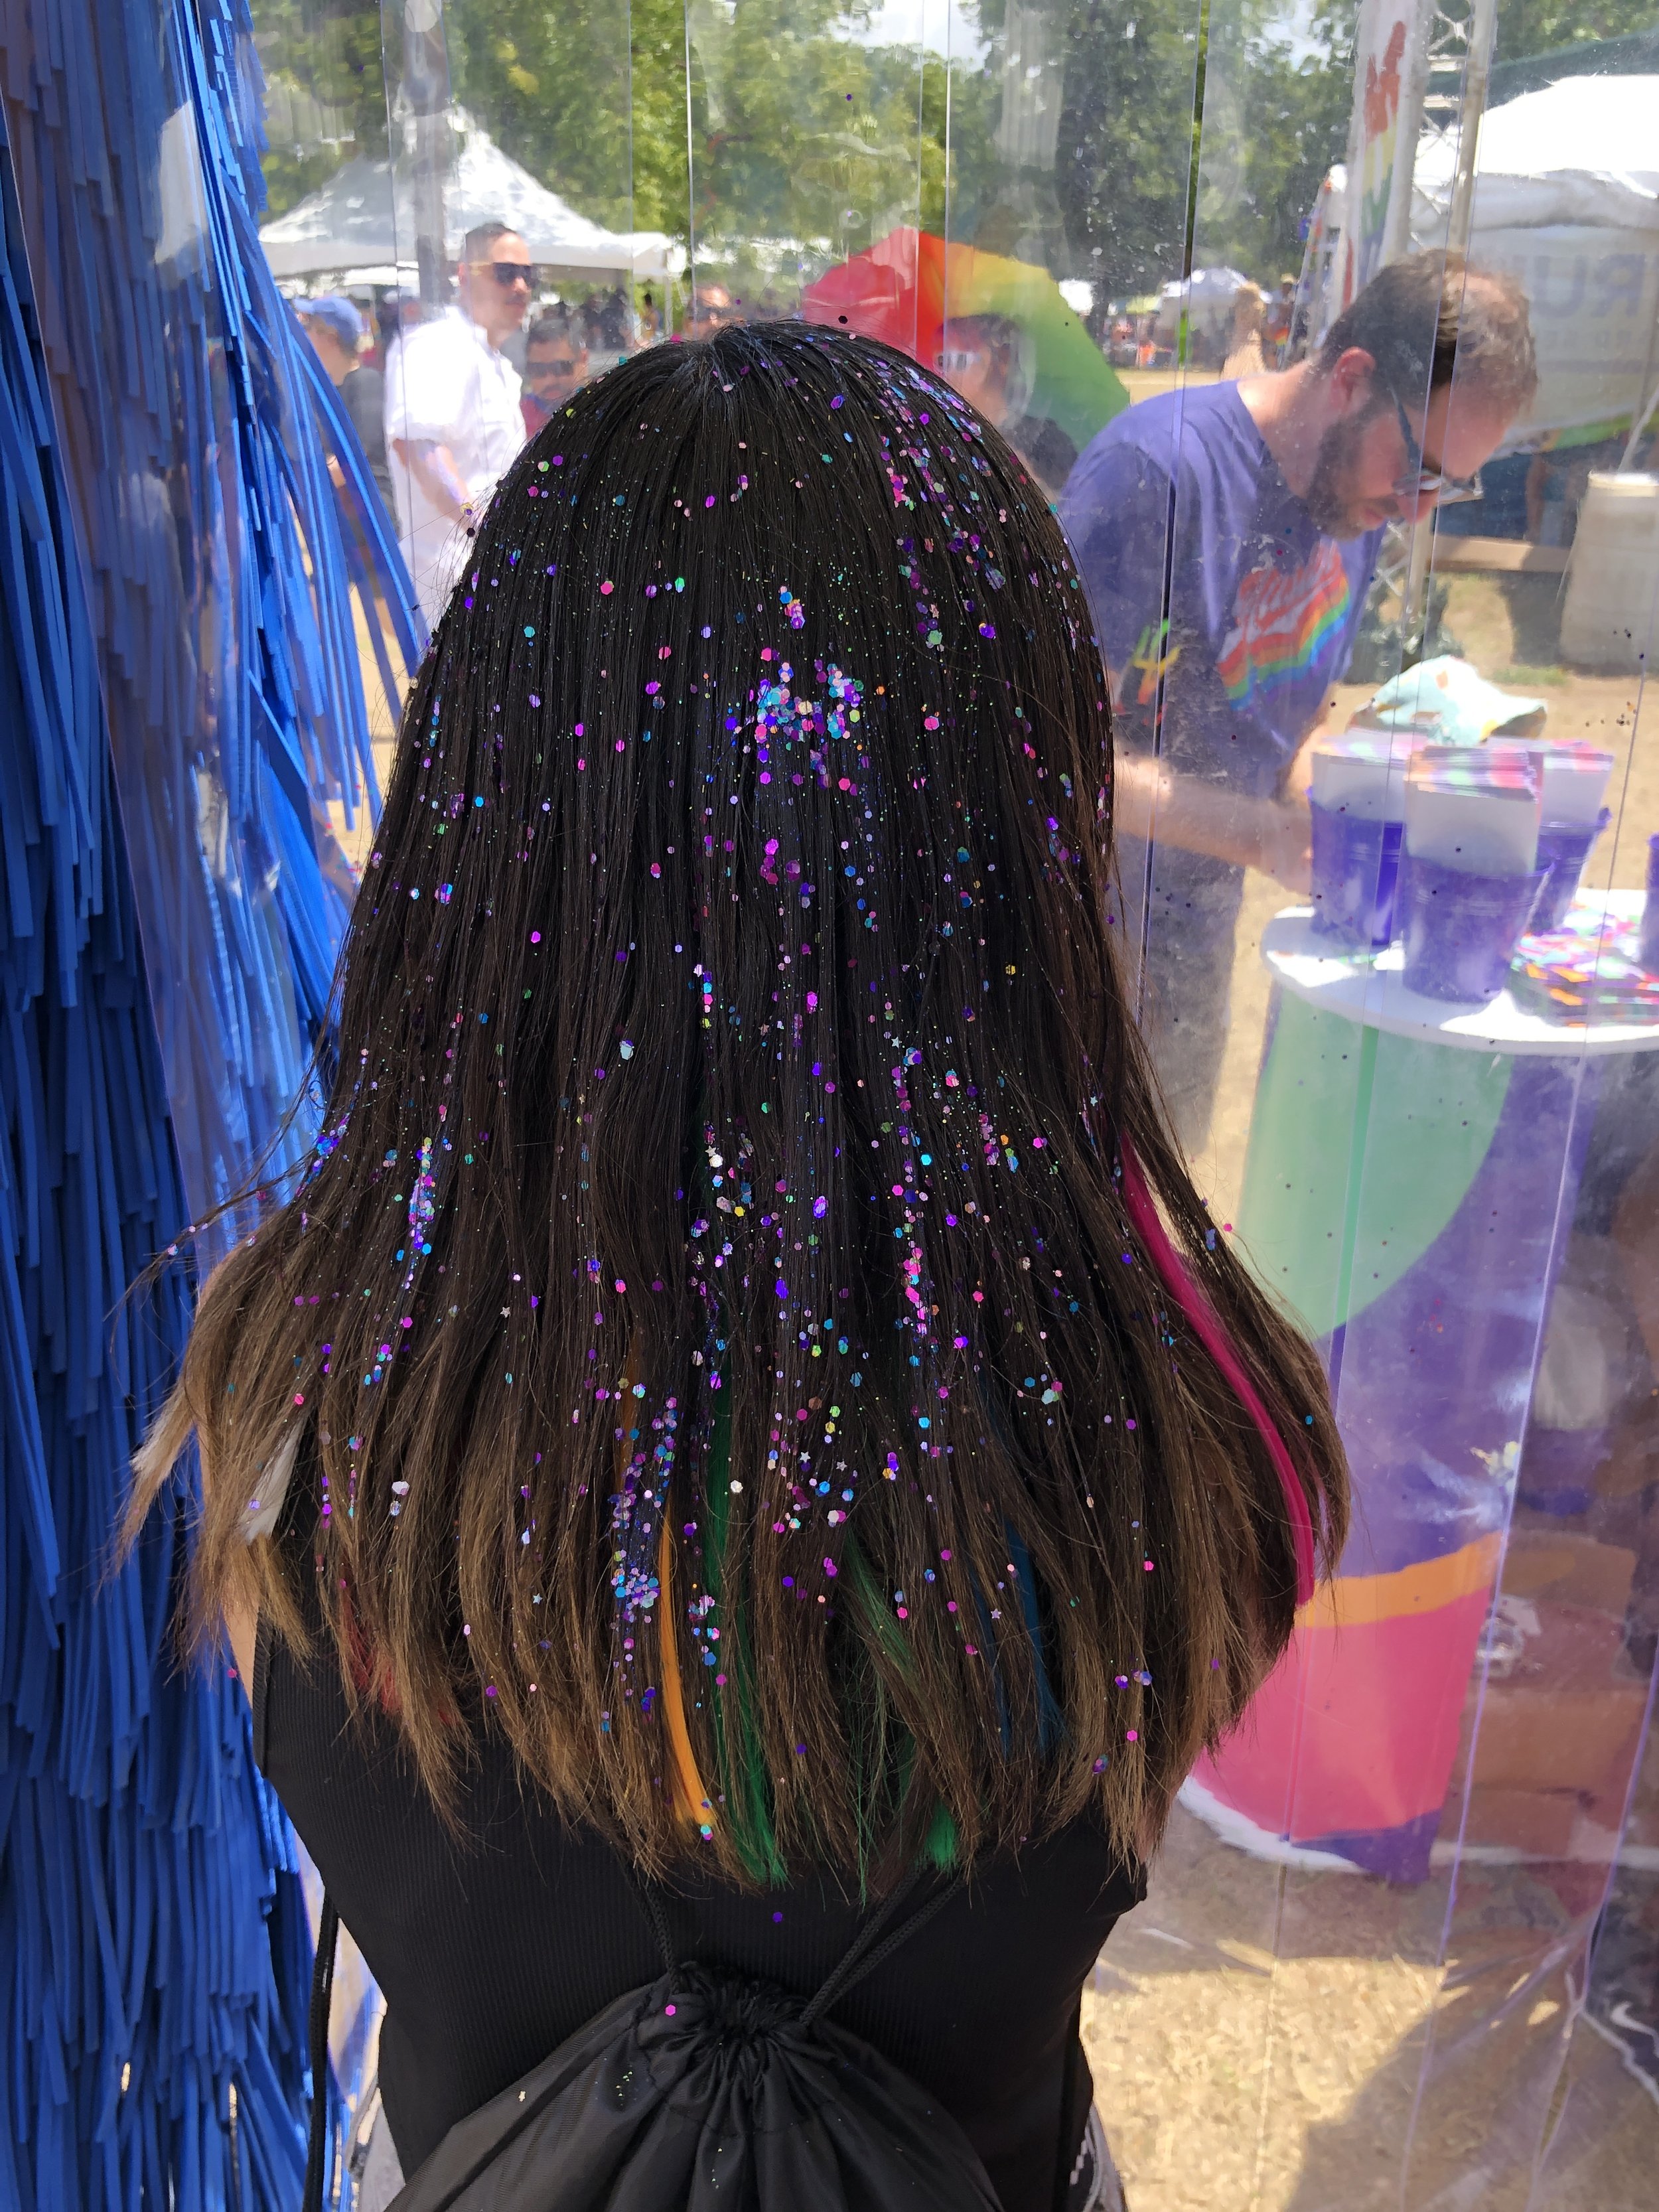 Glitter Hair for Festival near New York City.JPG